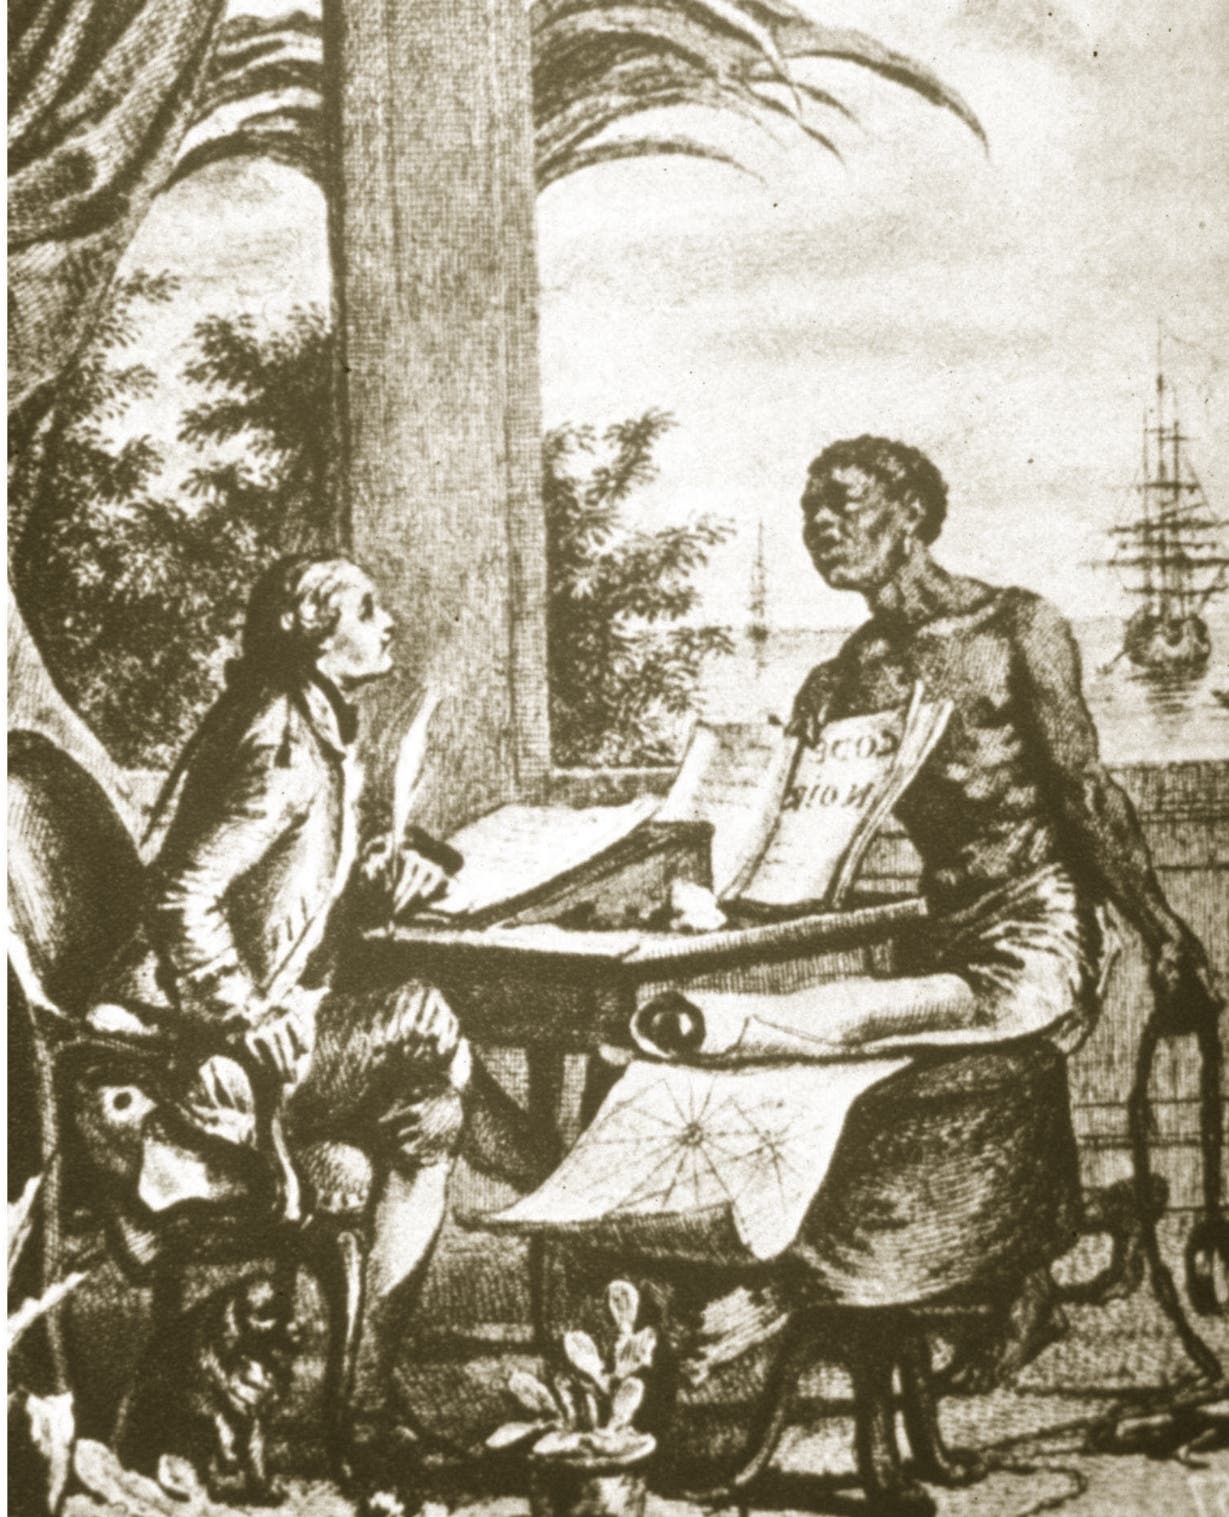 Esclavos en Santo Domingo durante la época colonial: amo le debía 40 pesos a su siervo